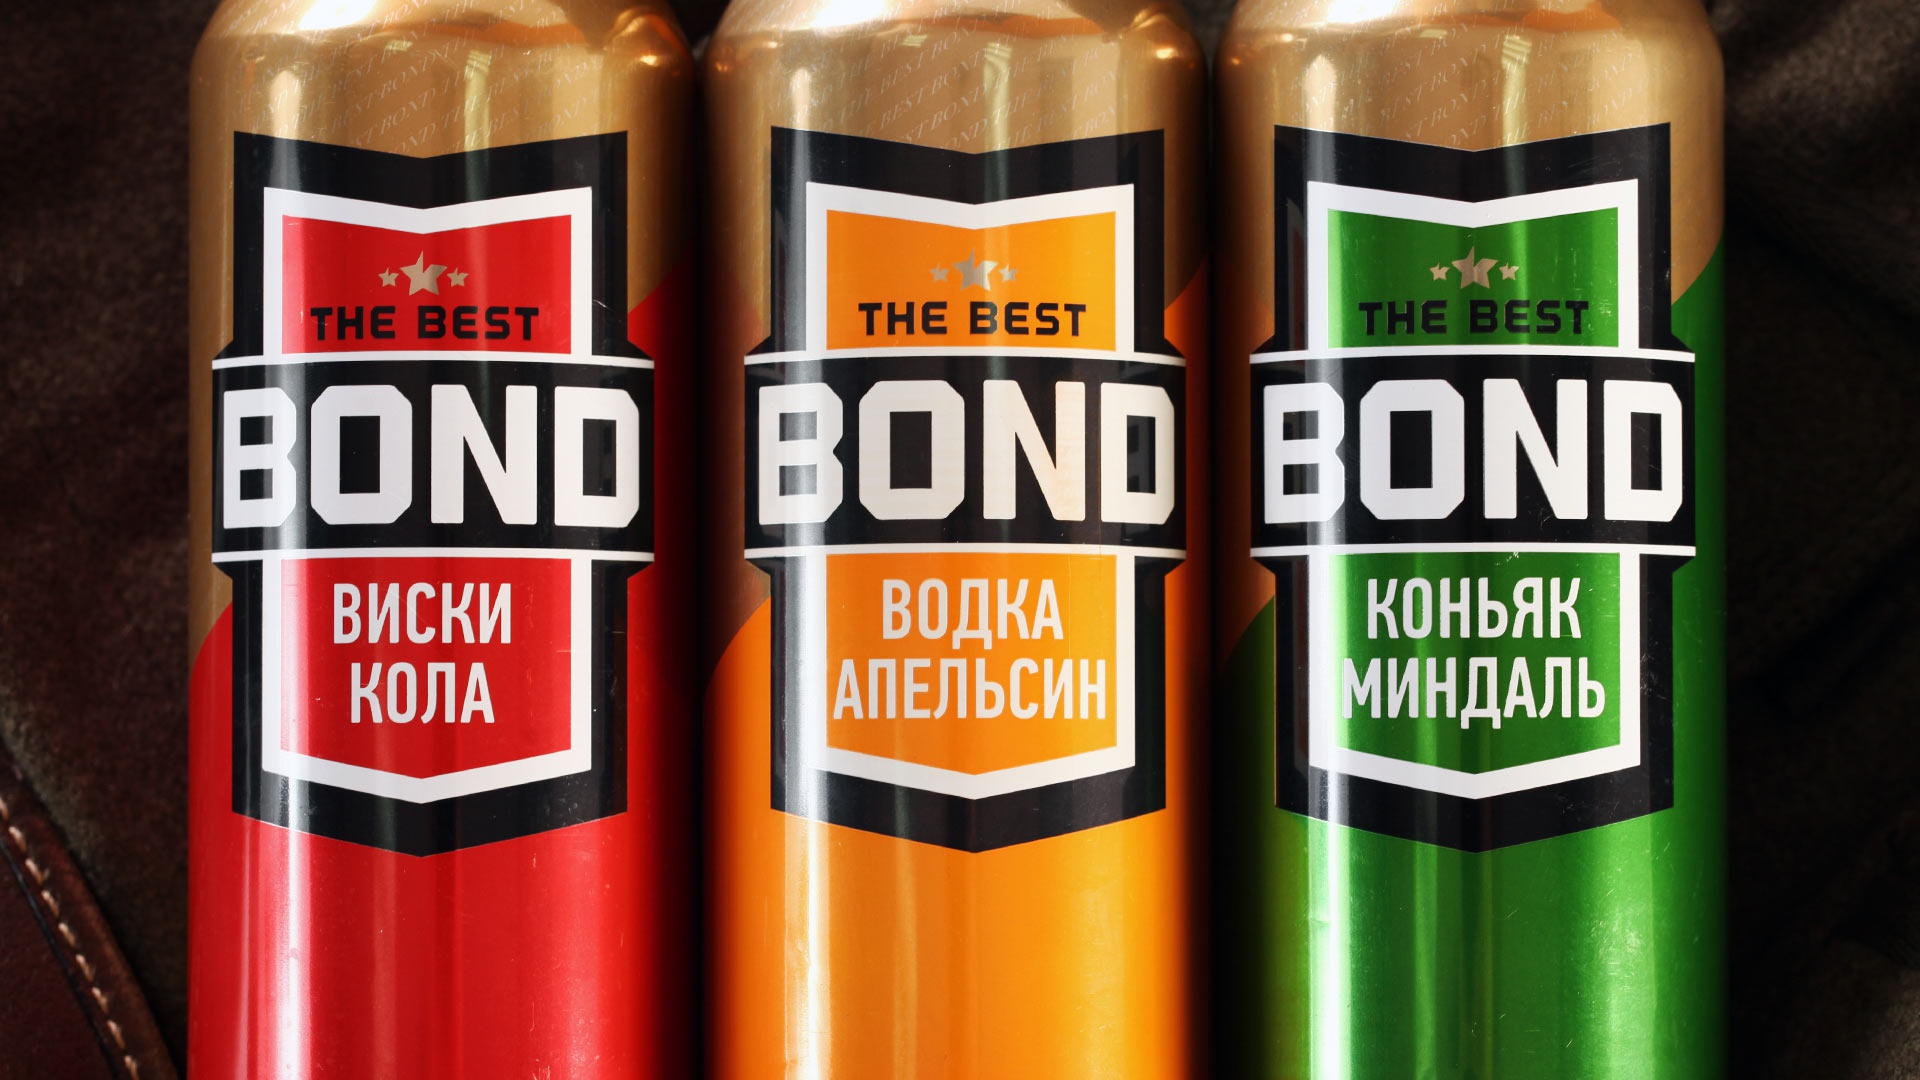 Артисан: Артисан: Дизайн банки напитка Bond (2.1)